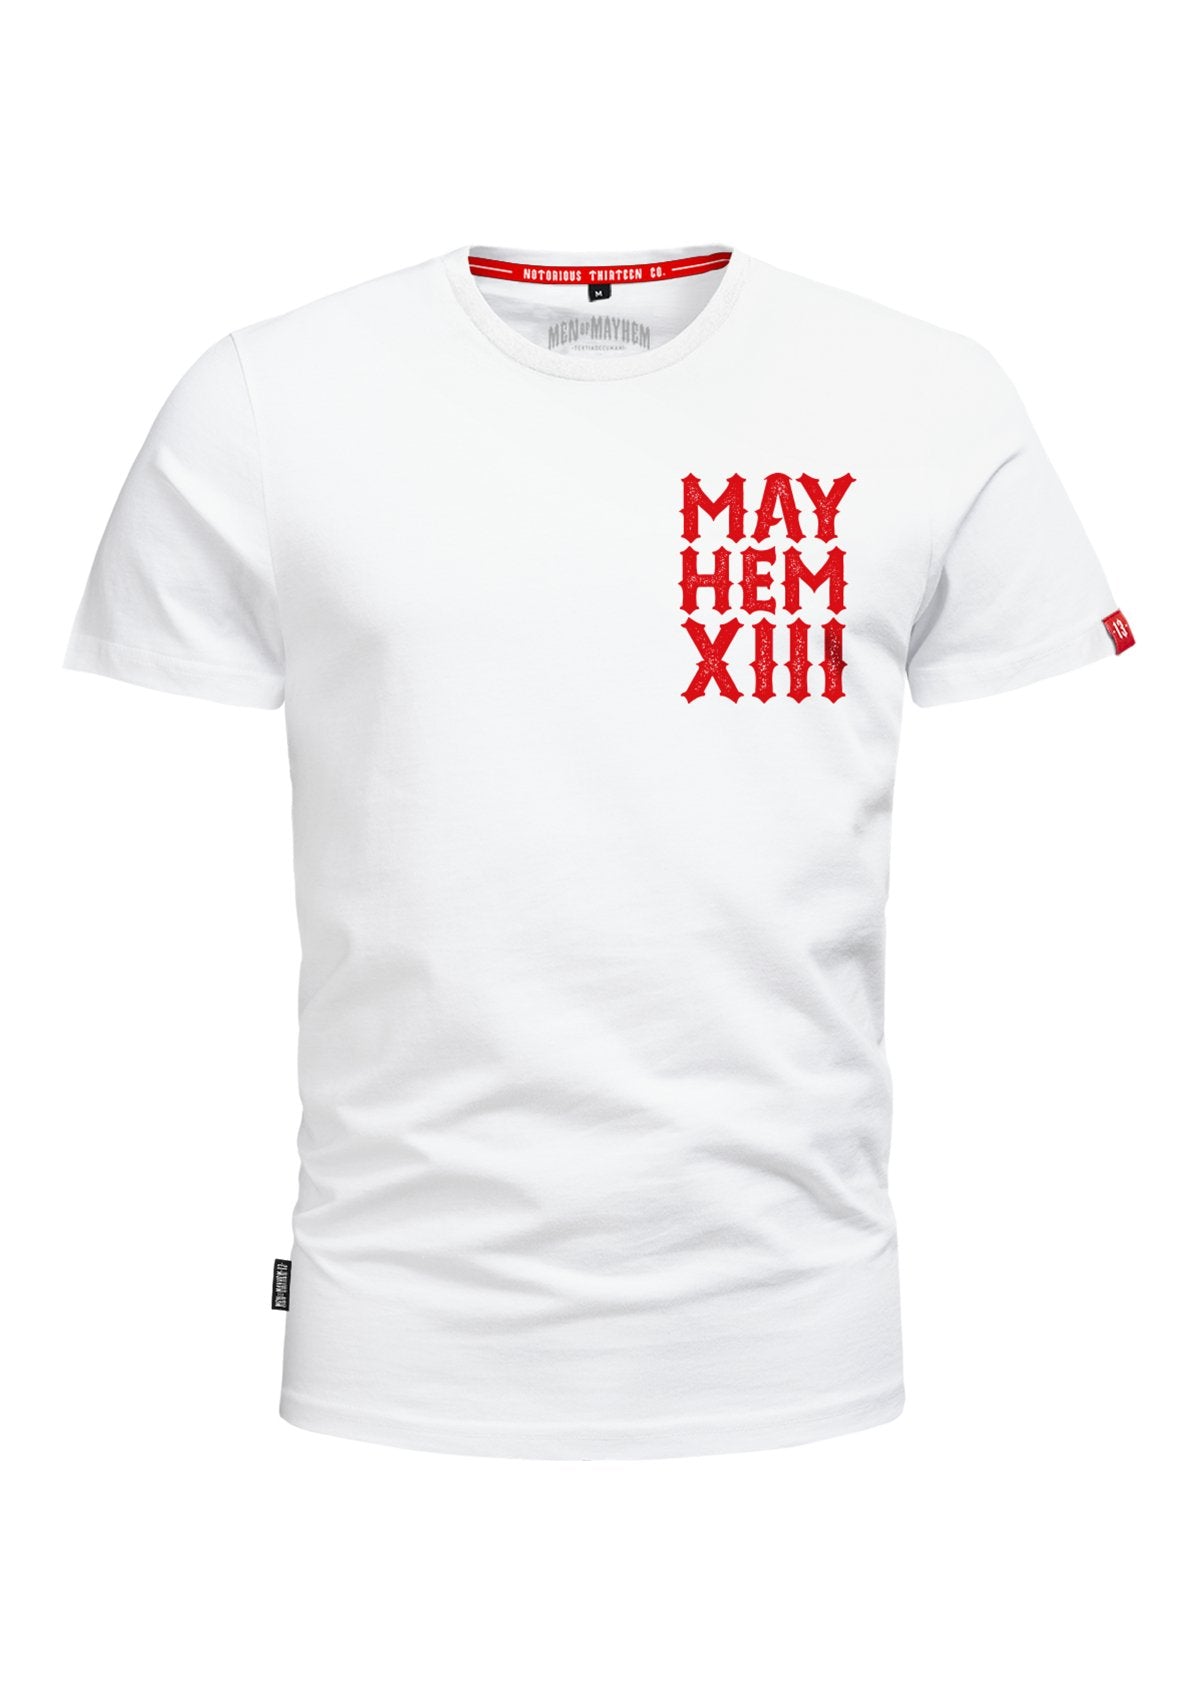 T - Shirt Mayhem Chopper XIII W/R - MEN OF MAYHEM - ALAIKO - EXCHANGES - MM - M - 1010 - MX - WR - Chopper - Men